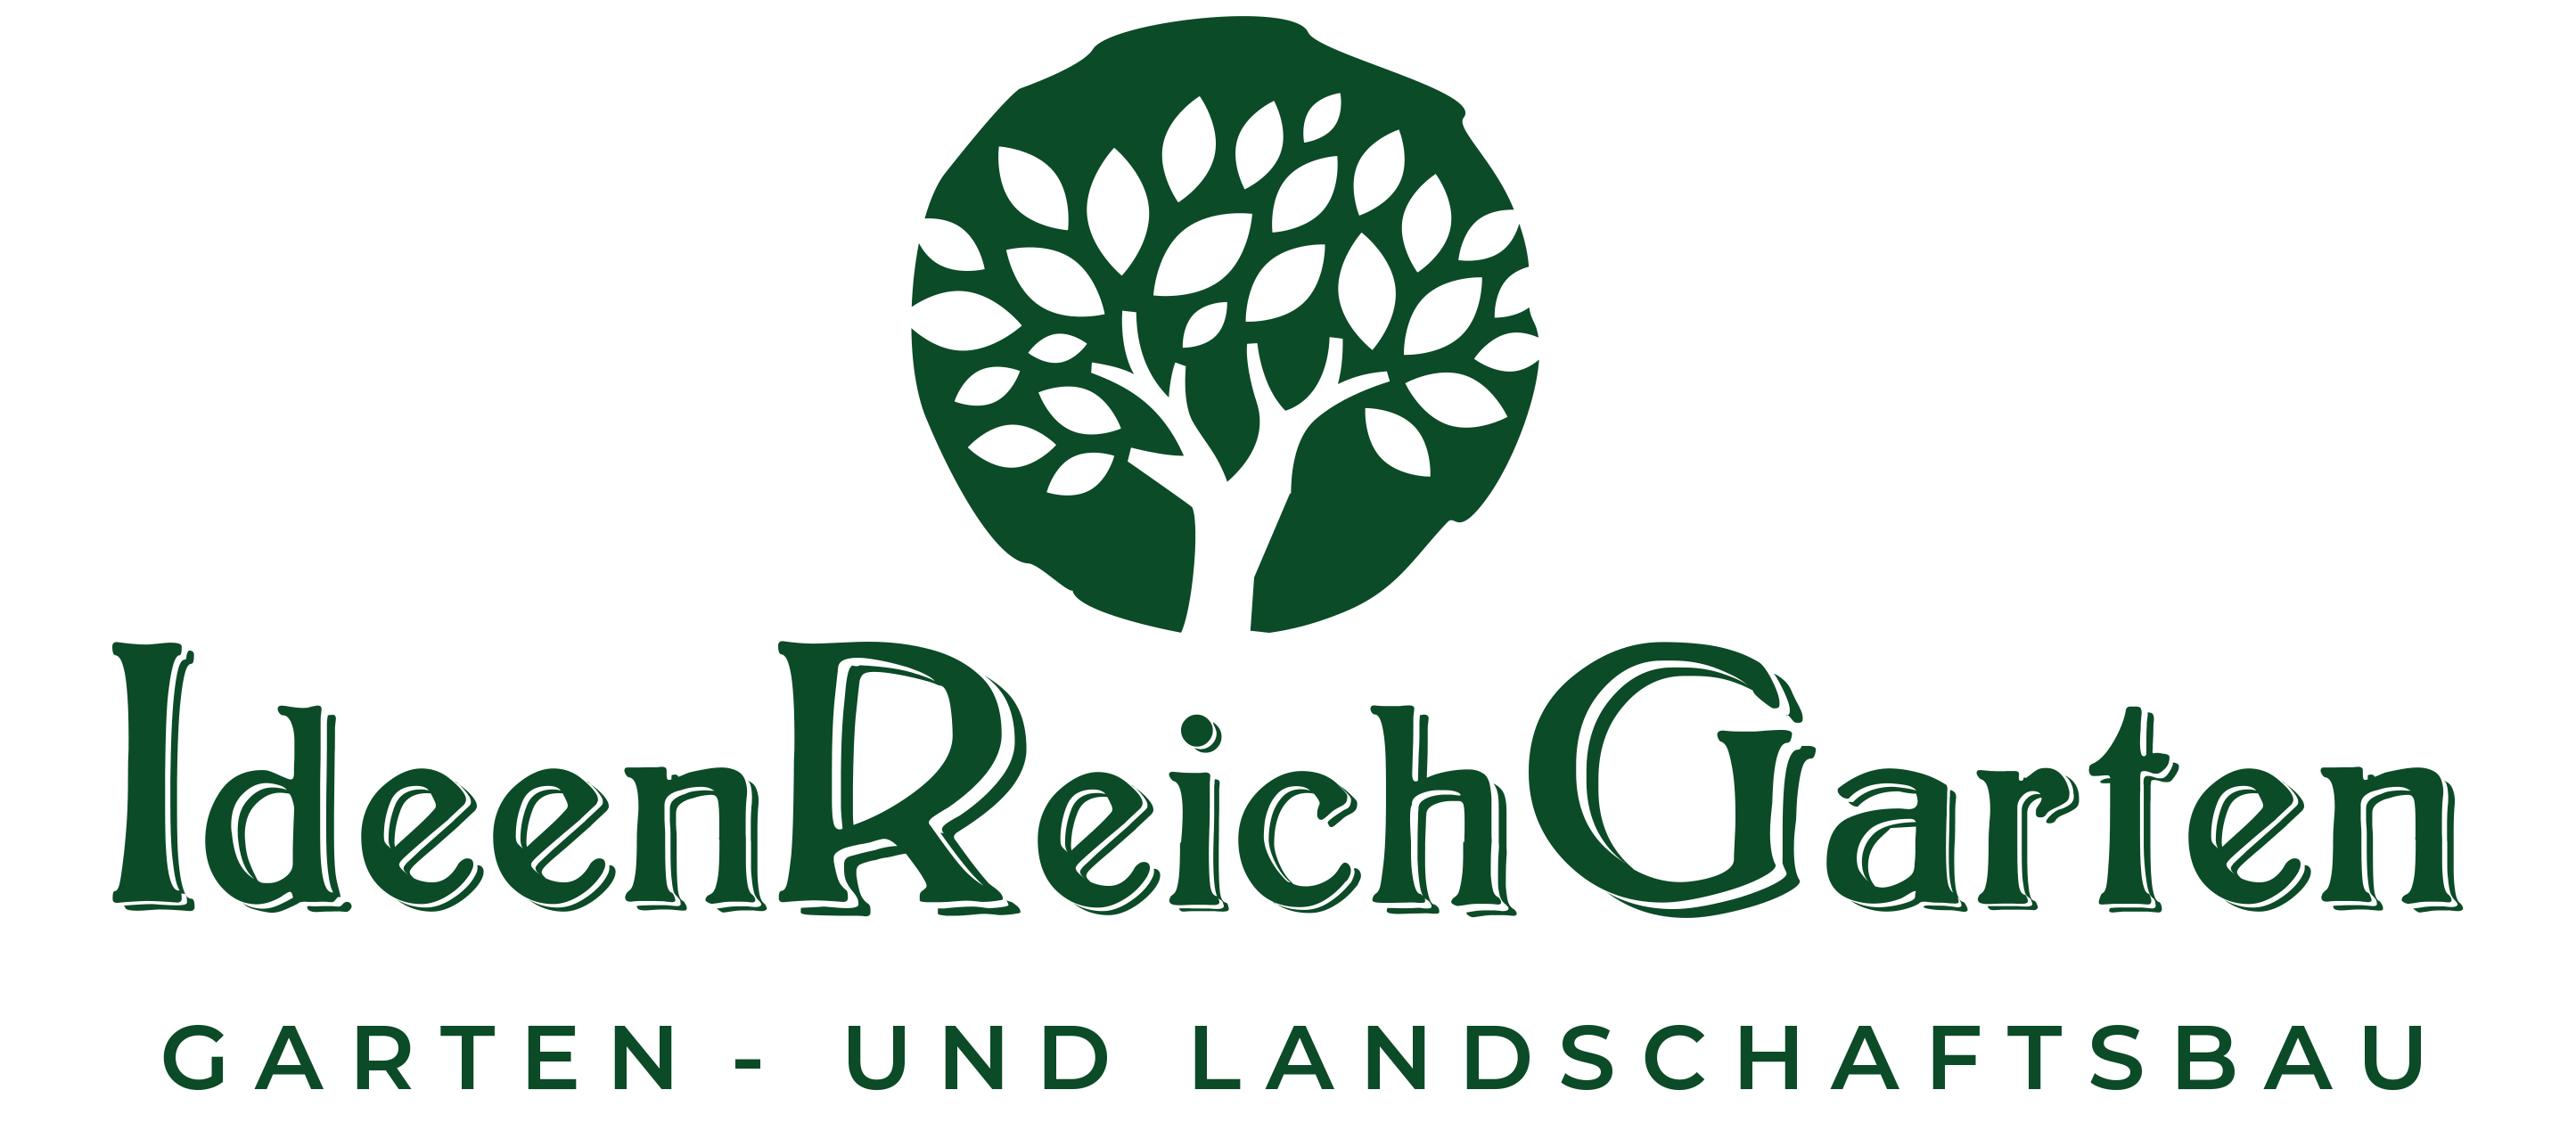 Bild 1 IdeenReichGarten Garten- und Landschaftbau in Wagenfeld